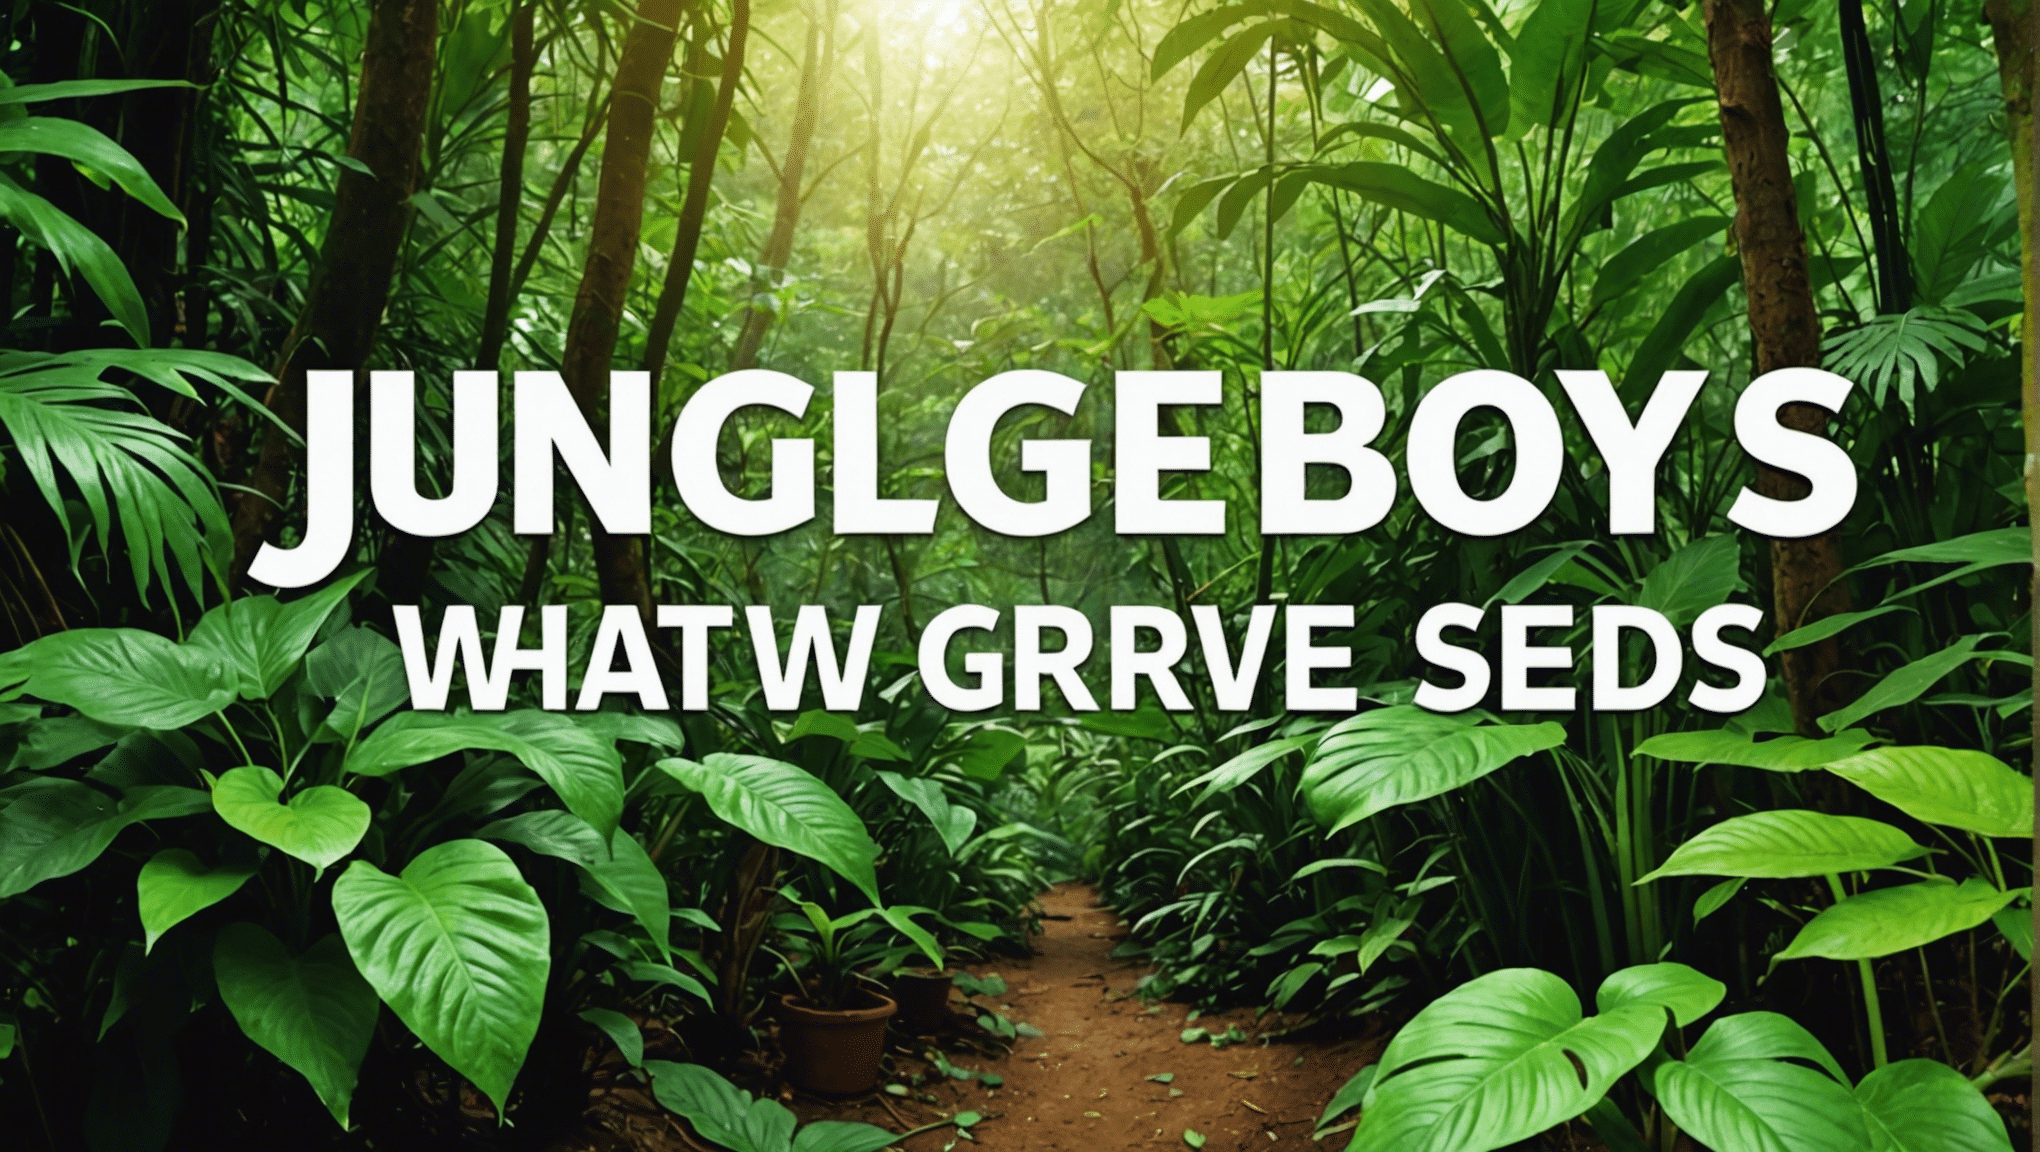 Descubra el significado de las semillas de Jungle Boys y su proceso de crecimiento en esta guía completa. Conozca las características únicas y las técnicas de cultivo de las semillas de Jungle Boys.